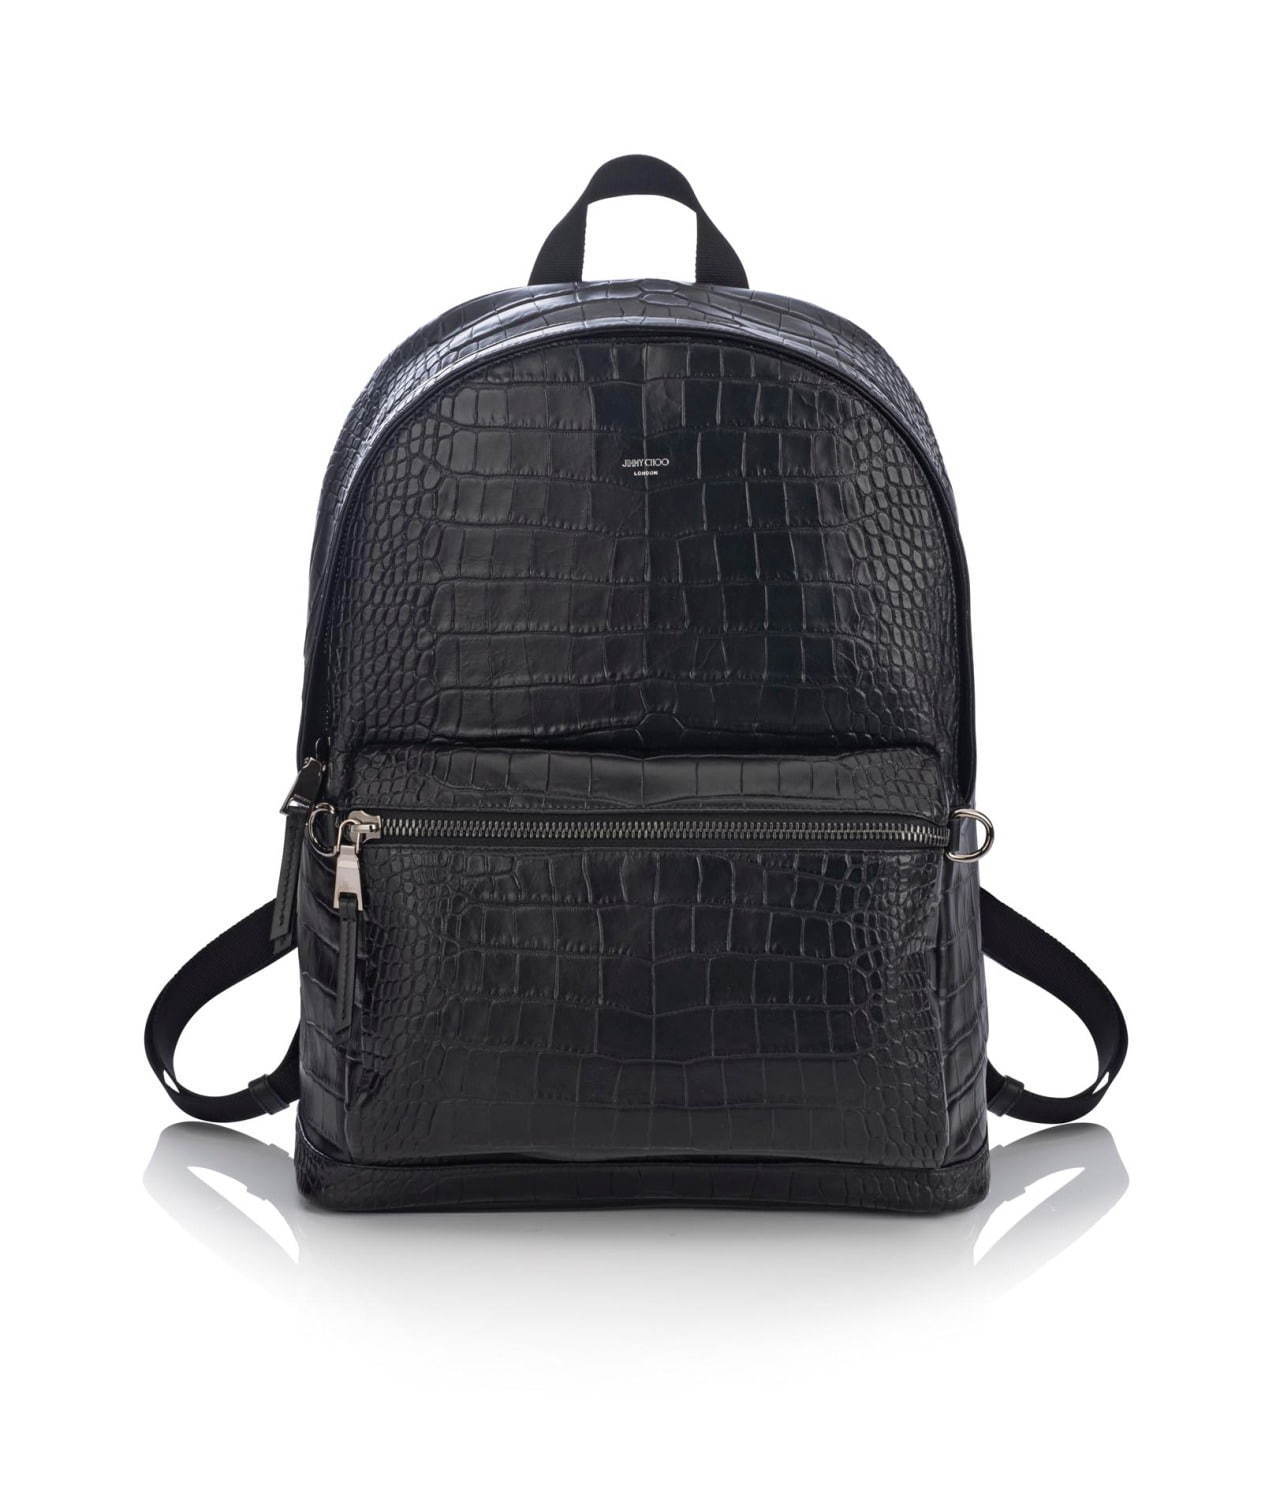 ジミー チュウの新作メンズバッグ レザーグッズ クロコダイルエンボスのバックパックや財布など ファッションプレス